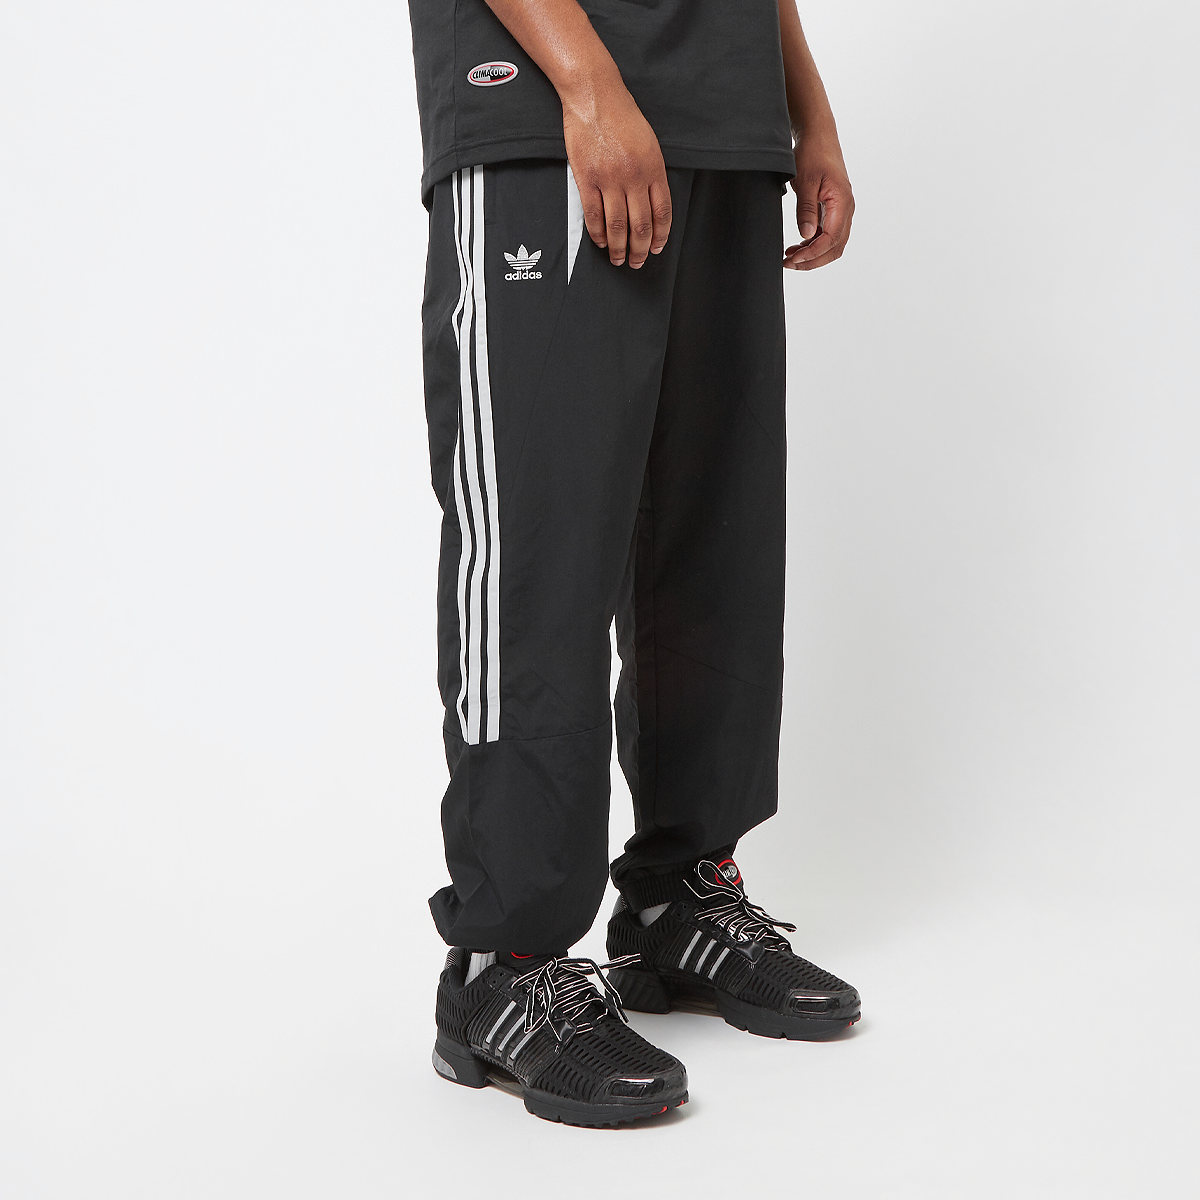 Adidas Originals Climacool Jogging Broek Trainingsbroeken Heren black maat: XL beschikbare maaten:S M L XL